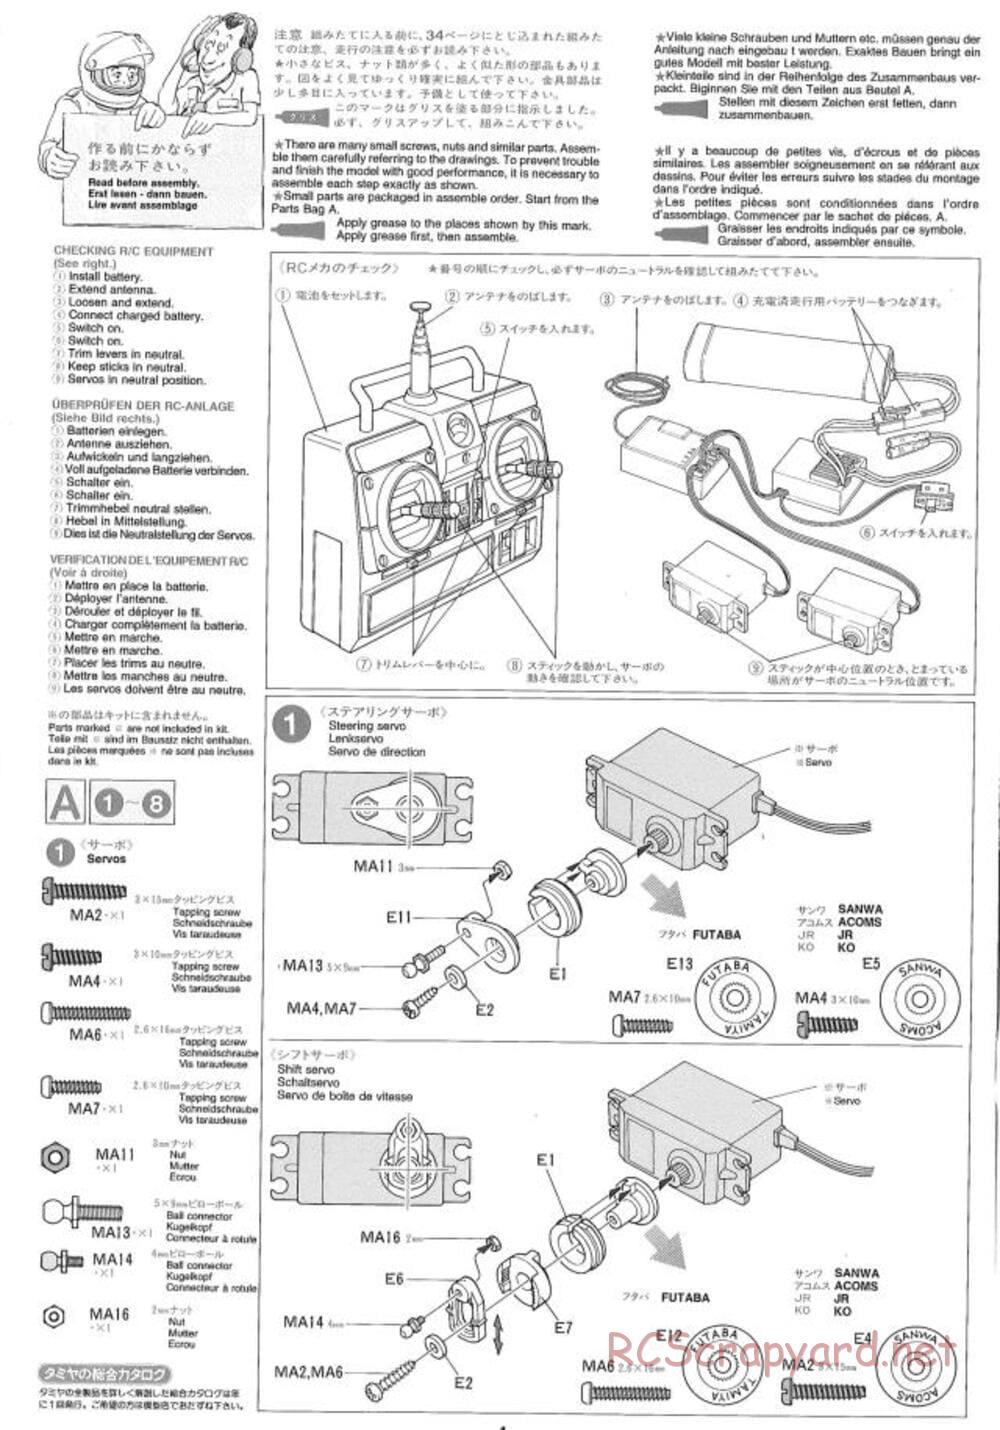 Tamiya - Ford Aeromax - Manual - Page 4